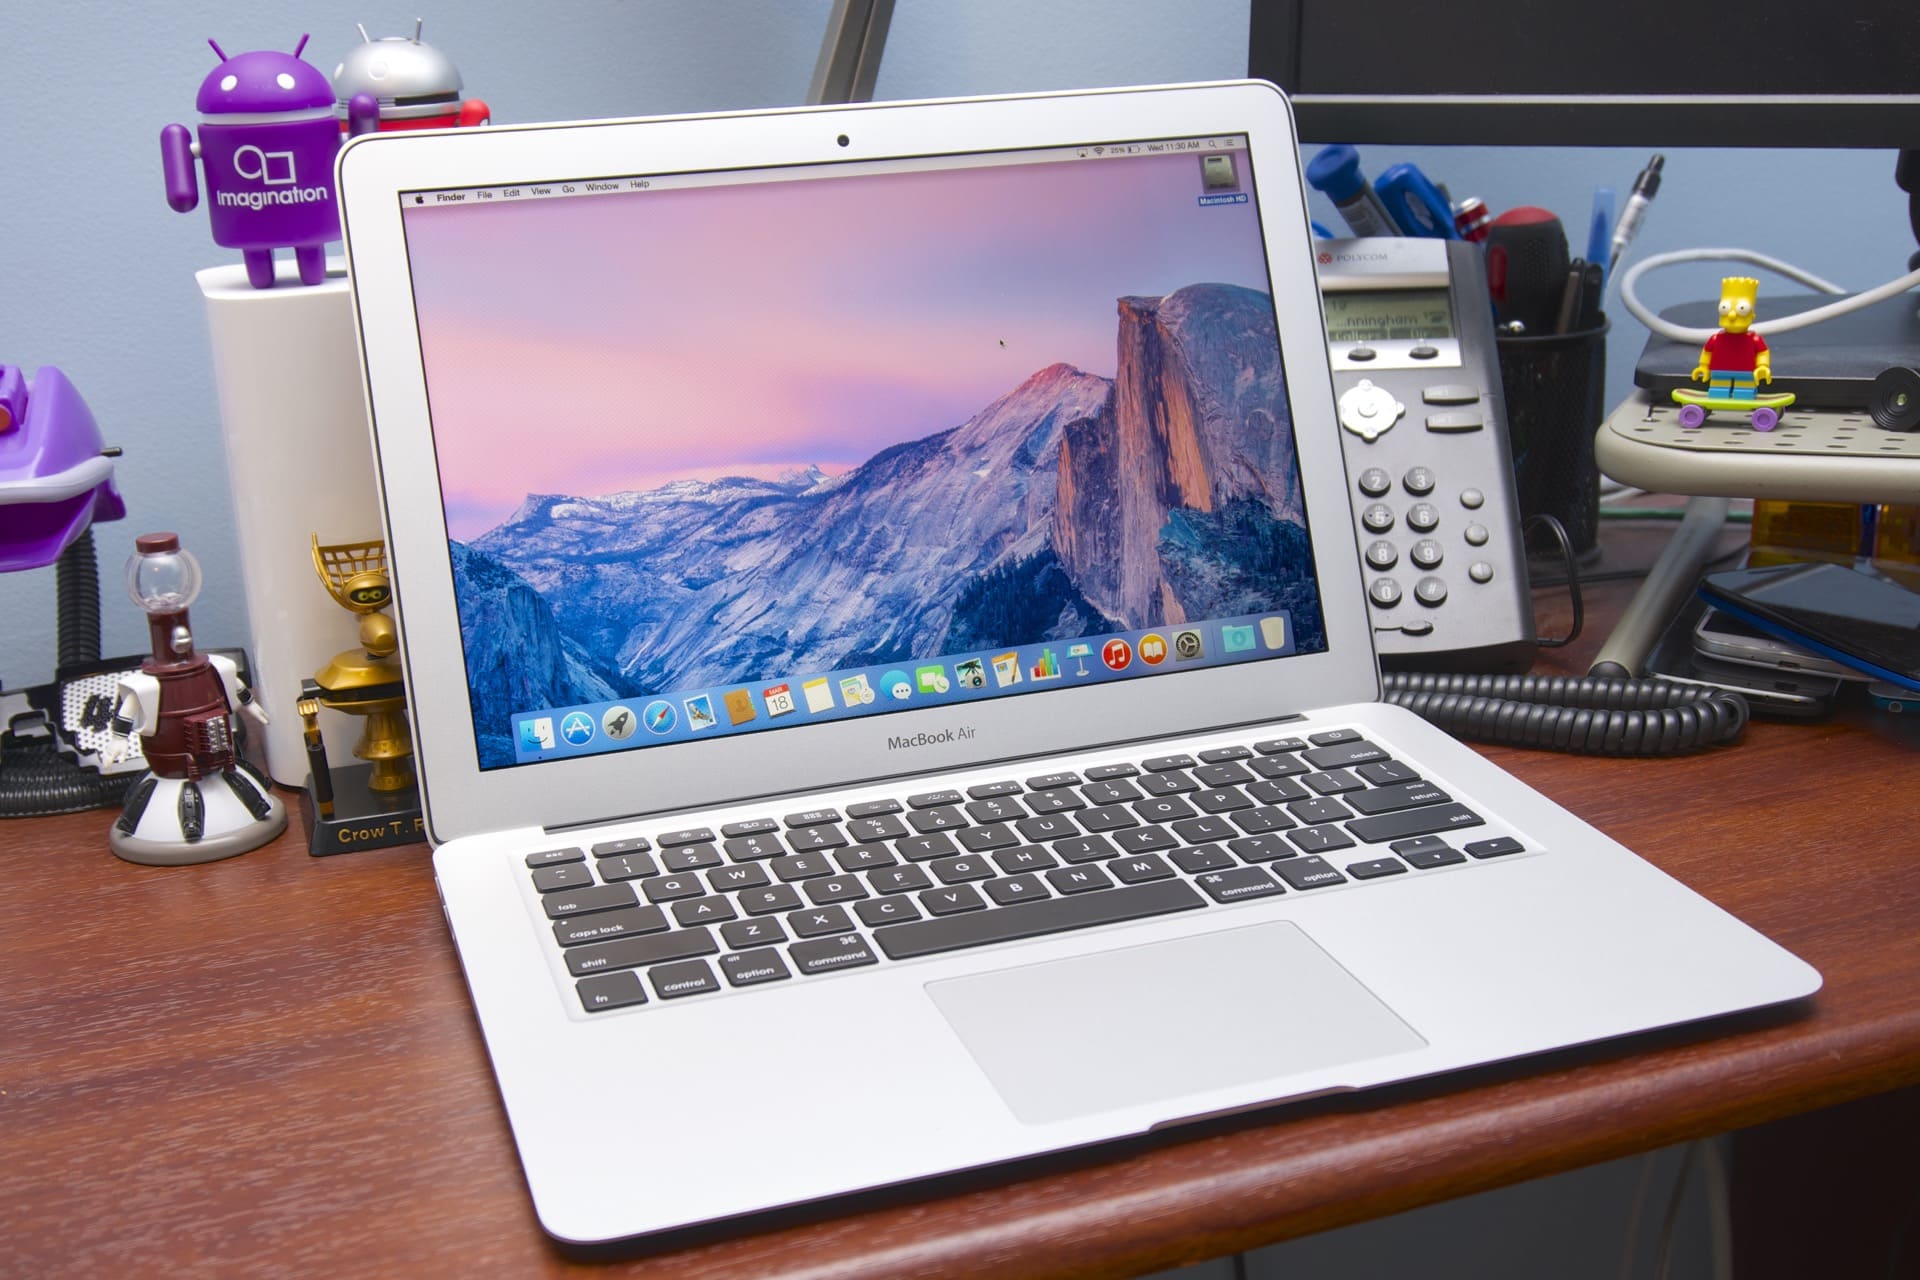 Đánh giá Apple Macbook Air MJVE2: Hiệu năng mạnh mẽ, pin khủng, tính di động cao